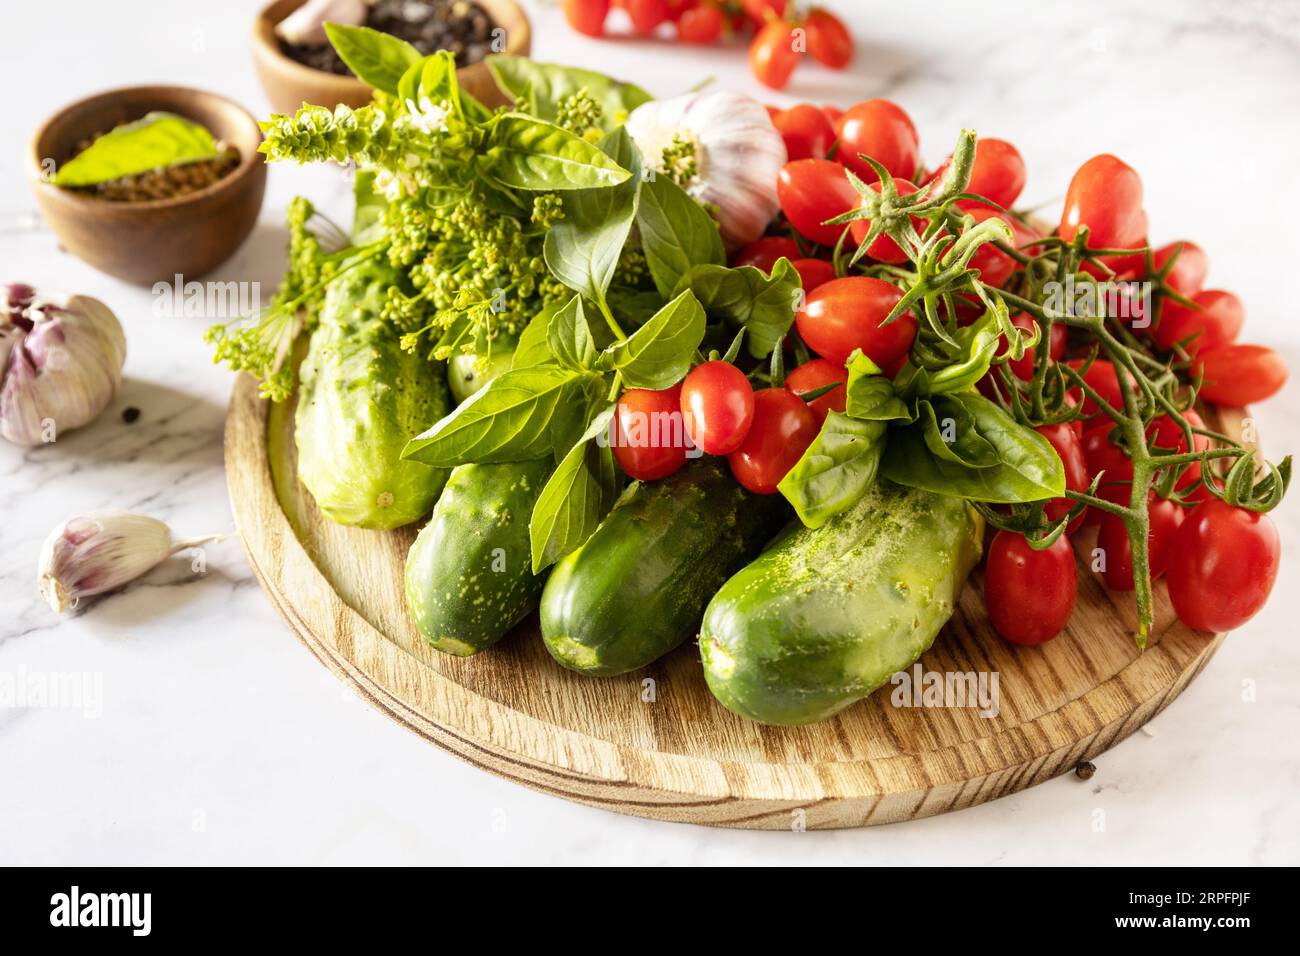 Frische Tomaten, Gurken und Gewürze für gesunde hausgemachte Gärung auf einem Marmortisch. Hauswirtschaft, Herbsternteerhaltung. Stockfoto